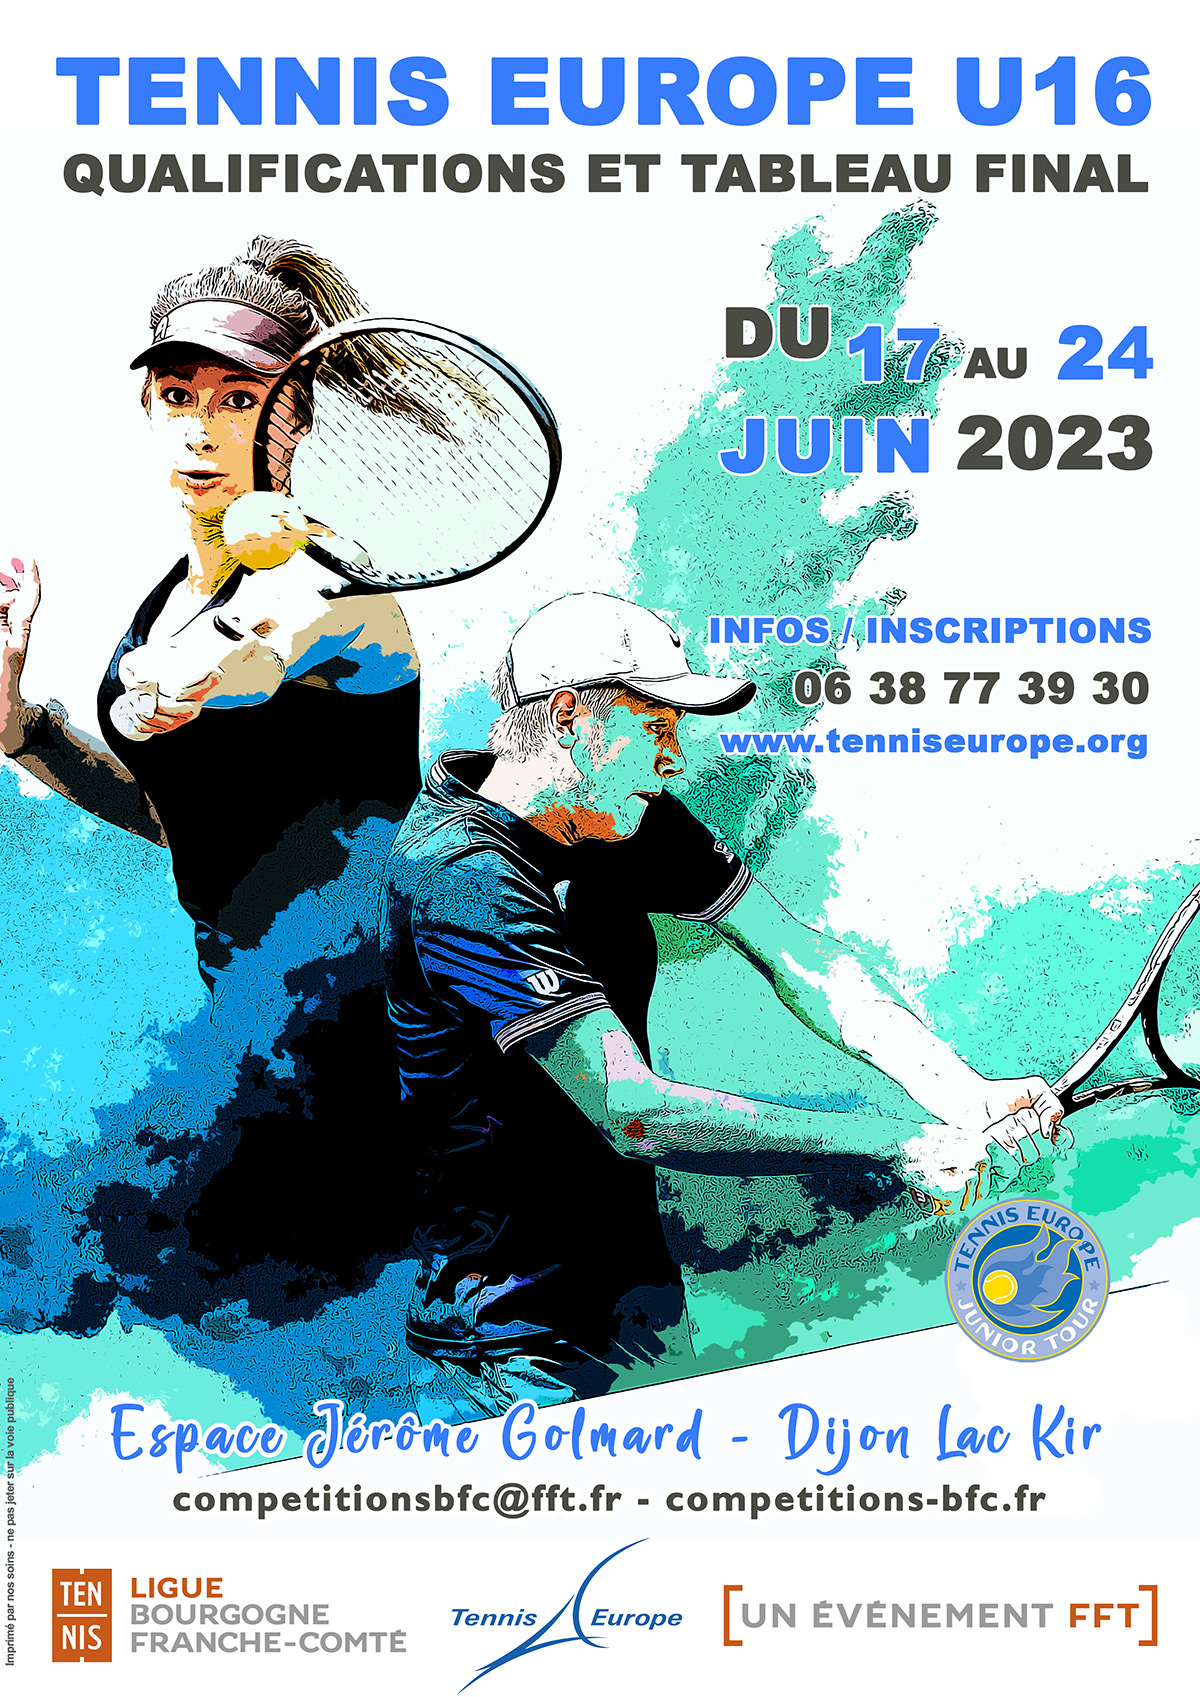 Tennis Europe U16 2023 : Ligue BFC de Tennis